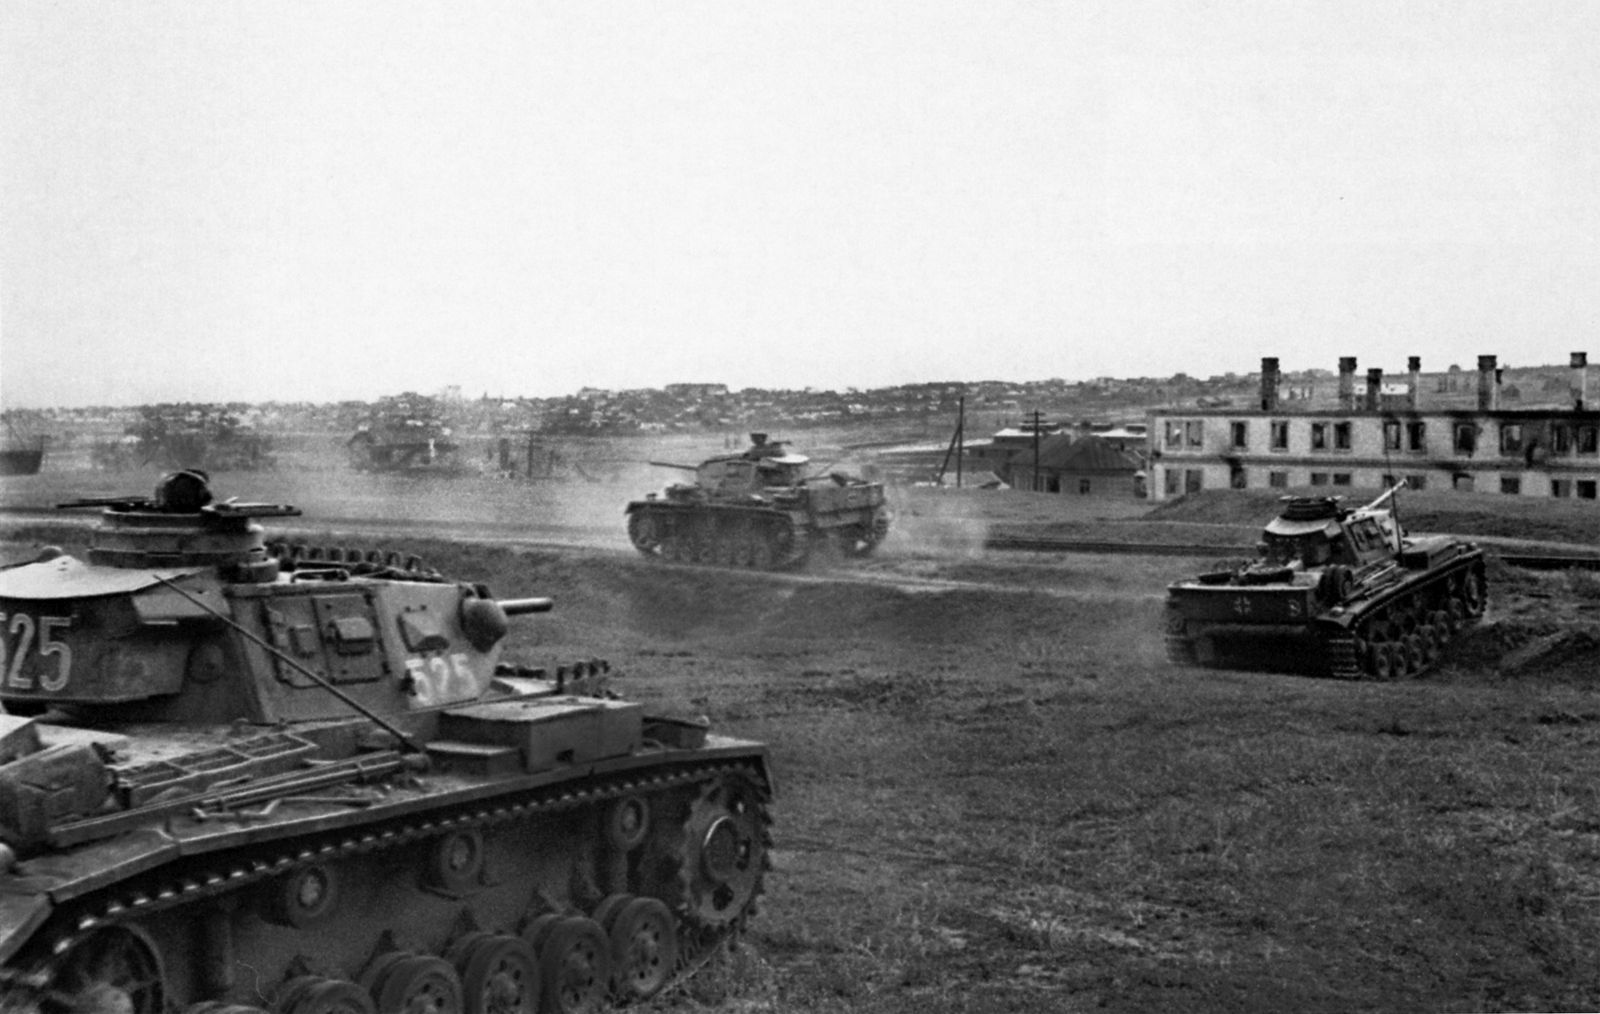 Pz.Kpfw.III near Stalingrad, 1942